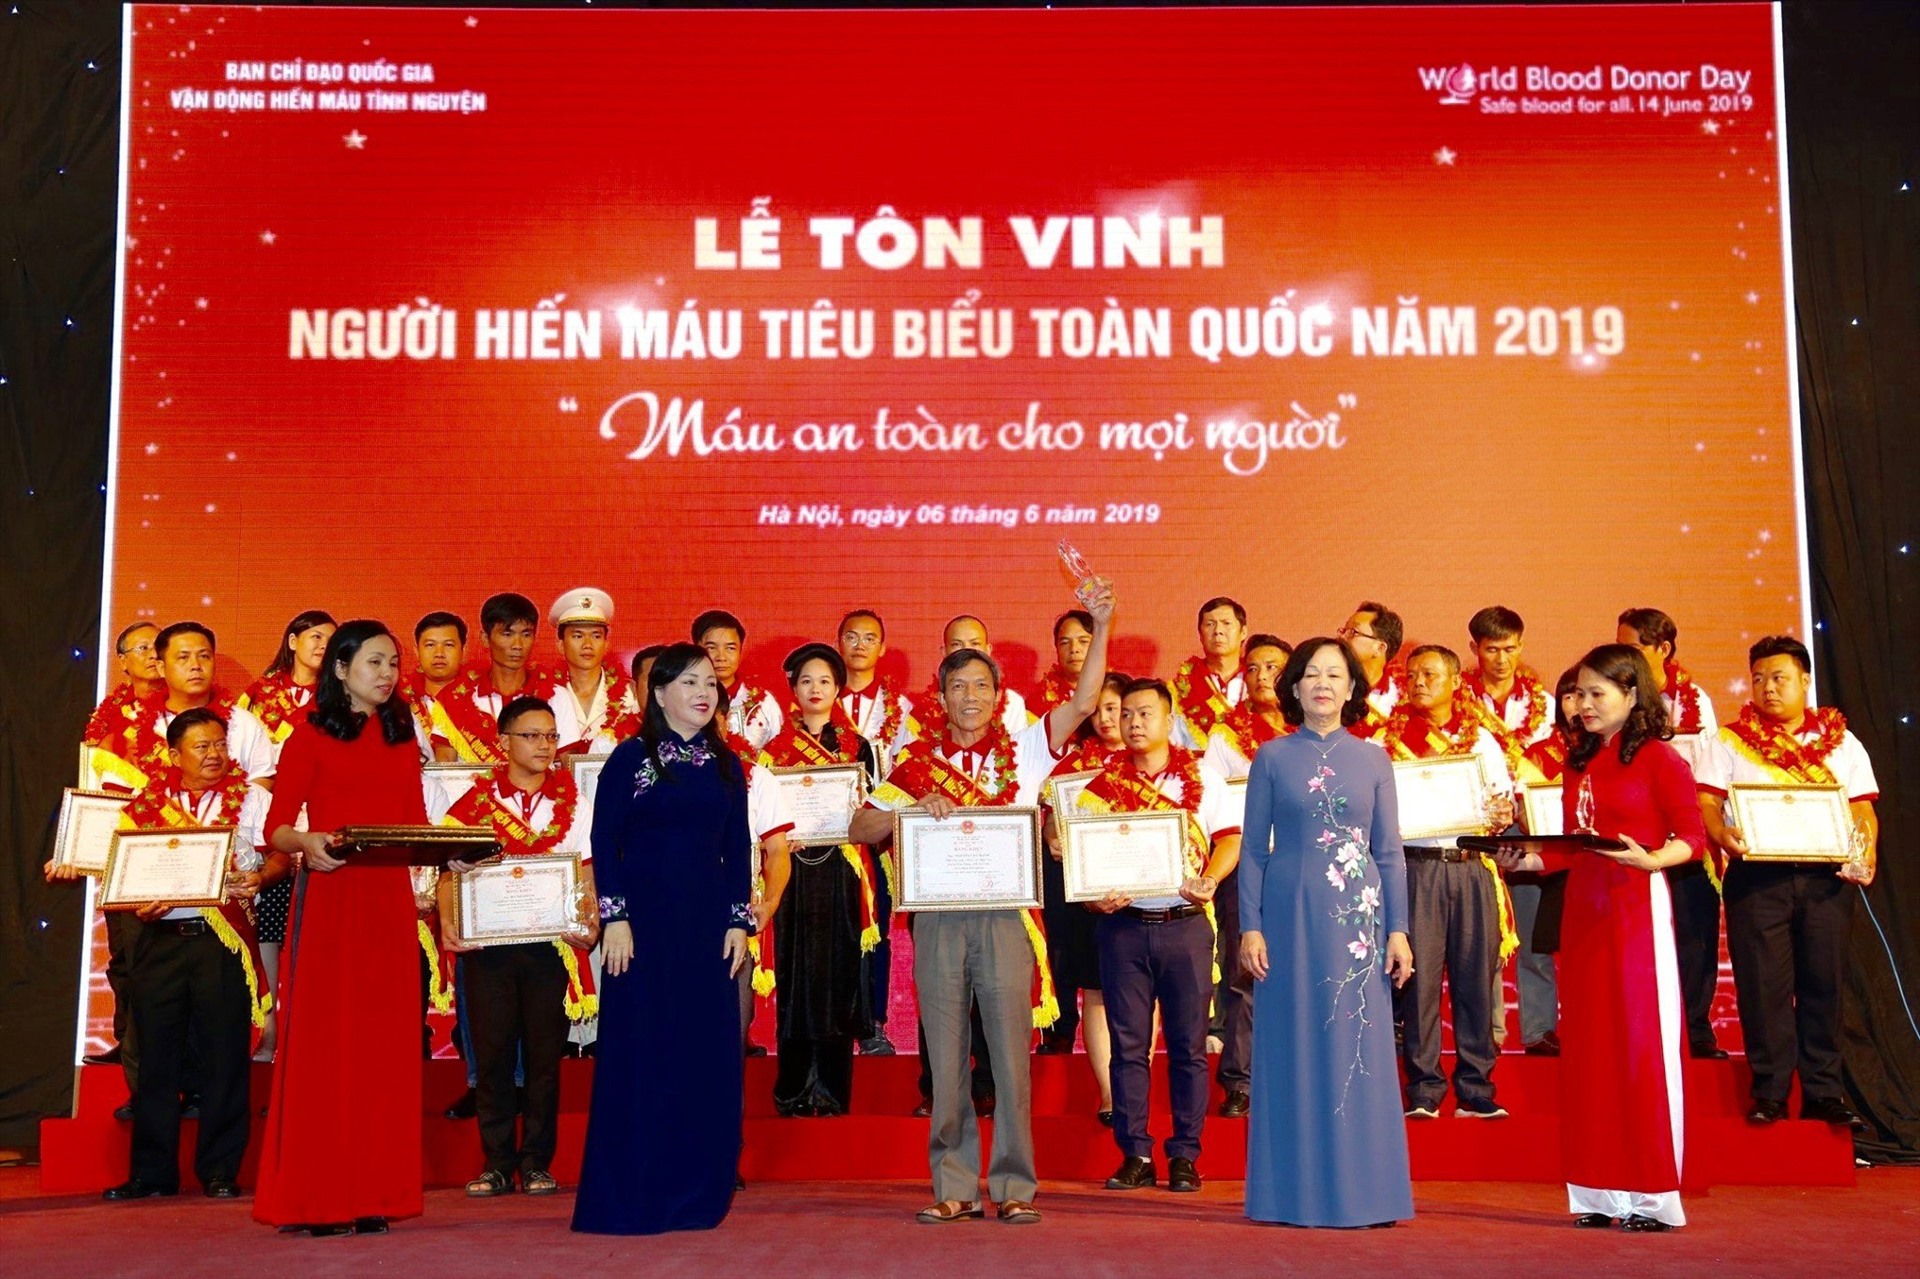 Bác Trần Quang Hòa tại Lễ tôn vinh người hiến máu tiêu biểu toàn quốc năm 2019. Ảnh: Nhân vật cung cấp